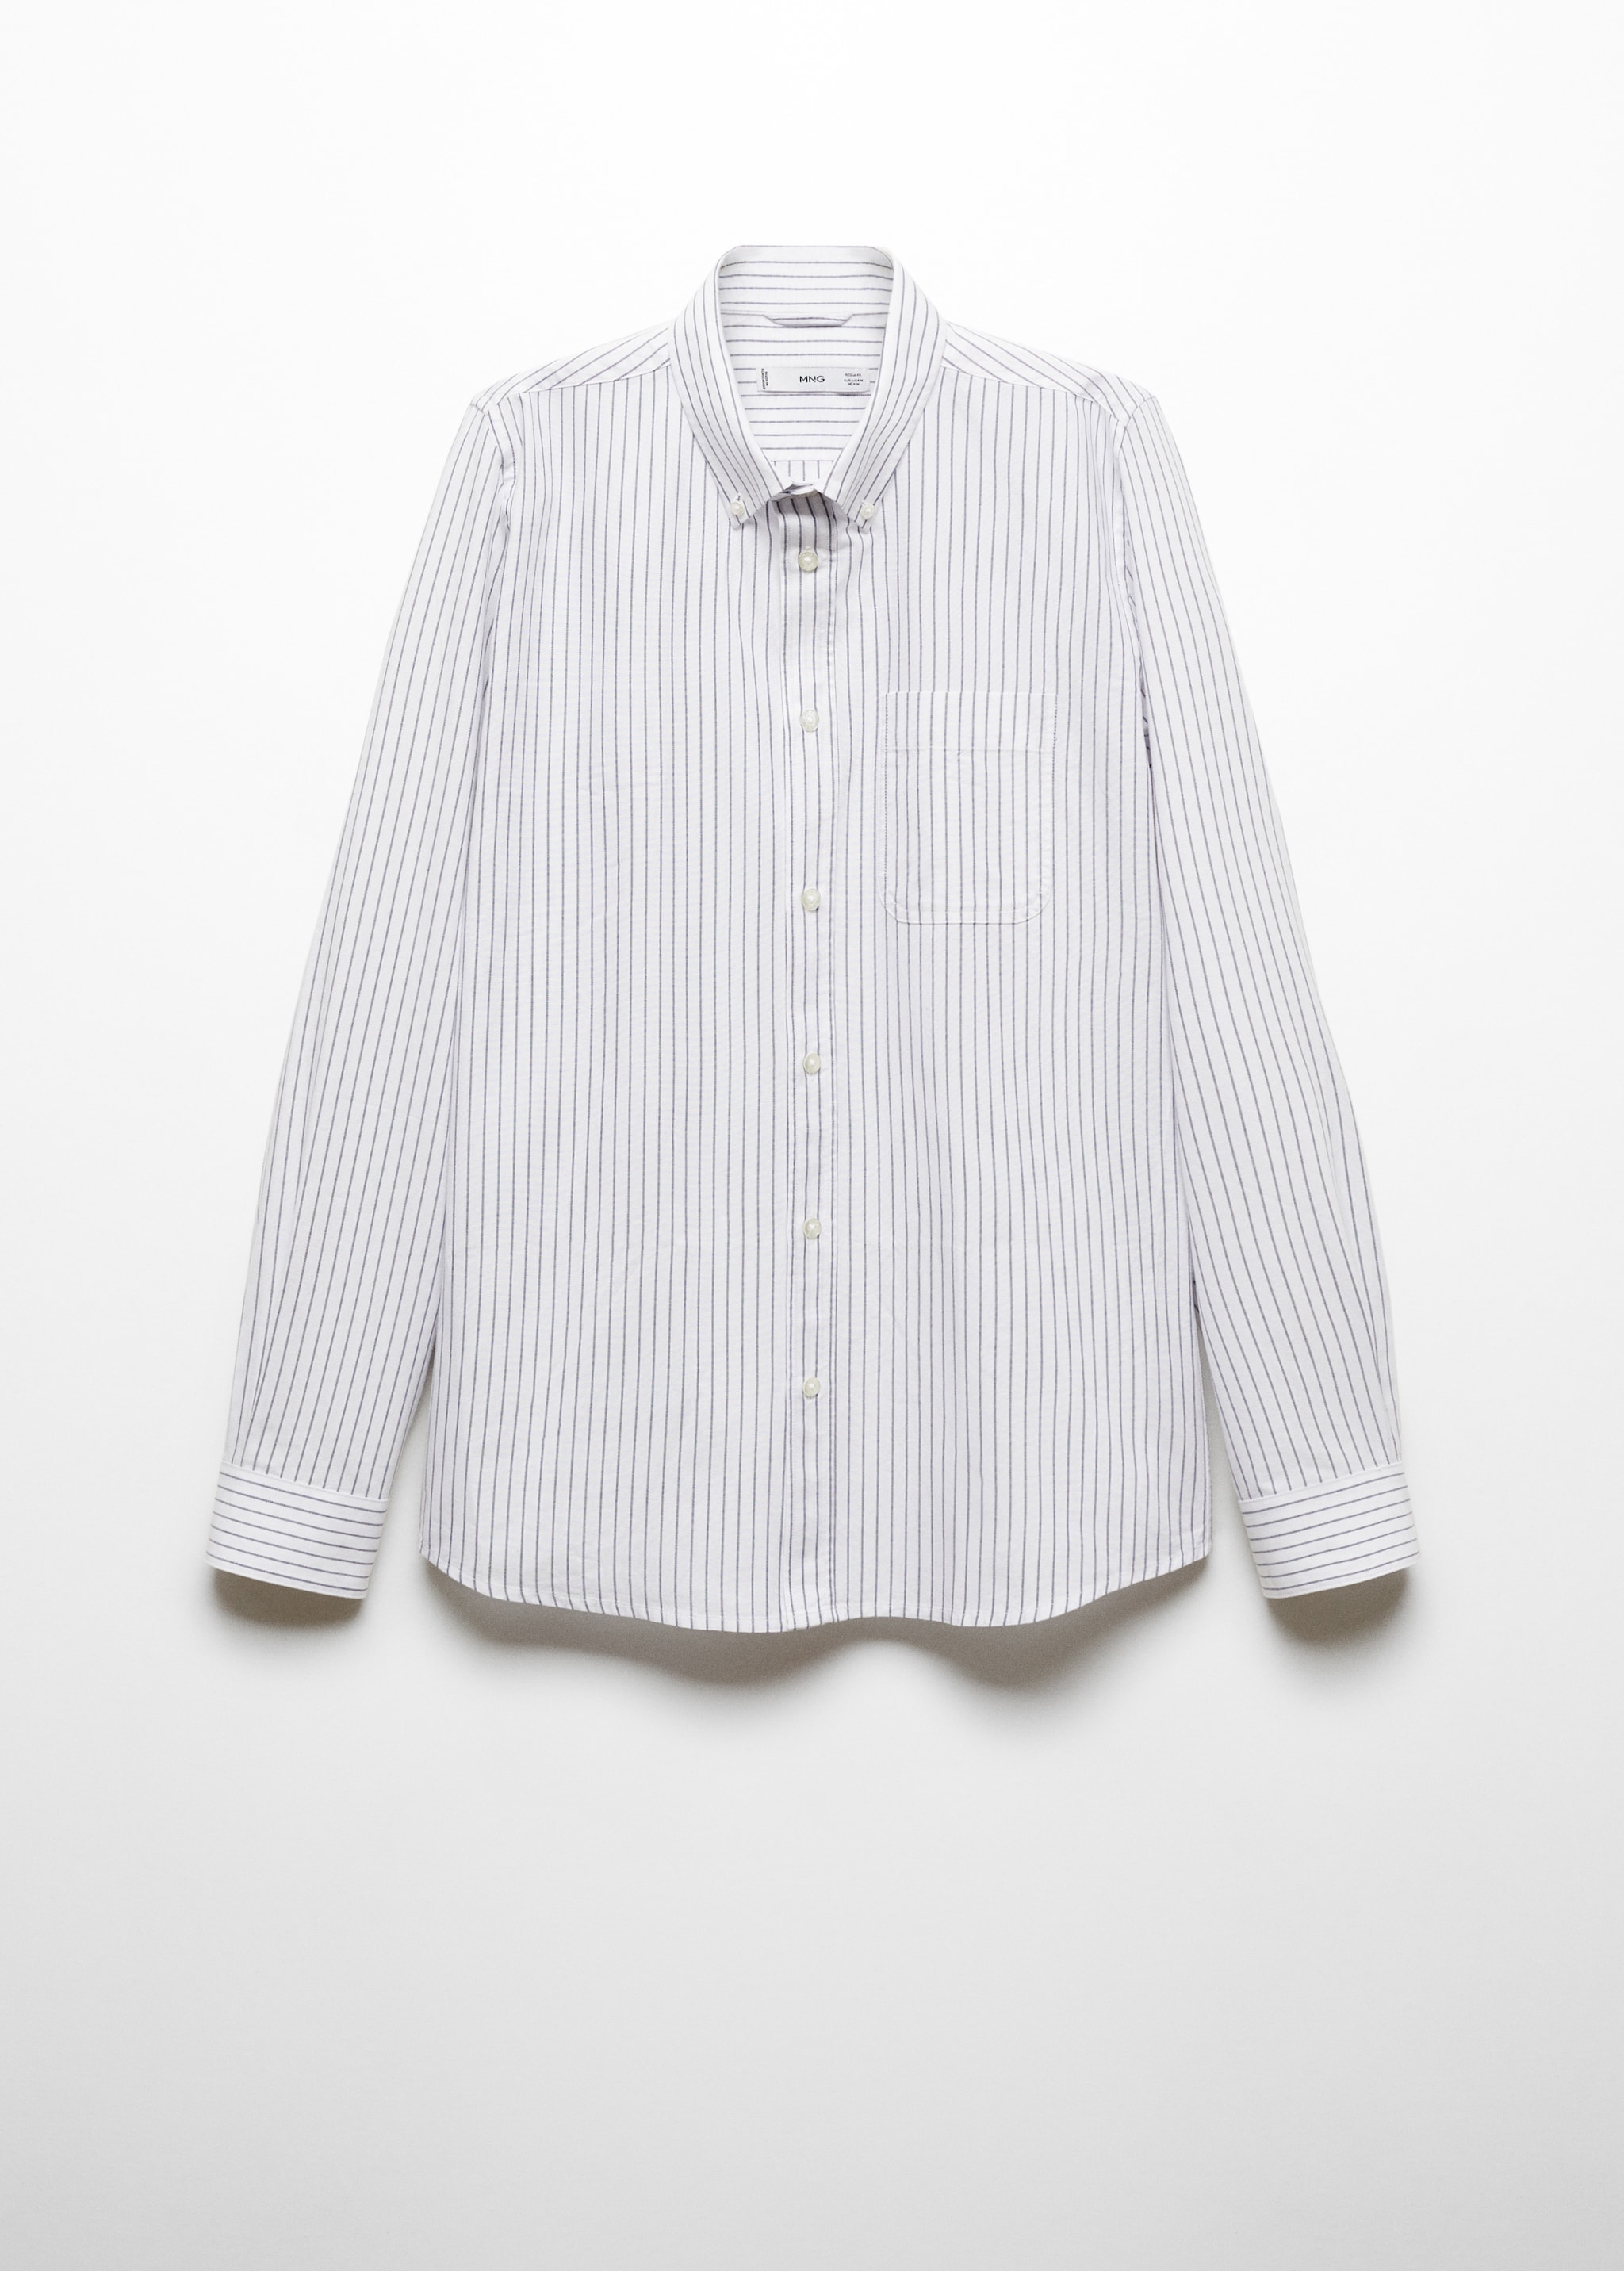 100% cotton kodak striped shirt - Article without model